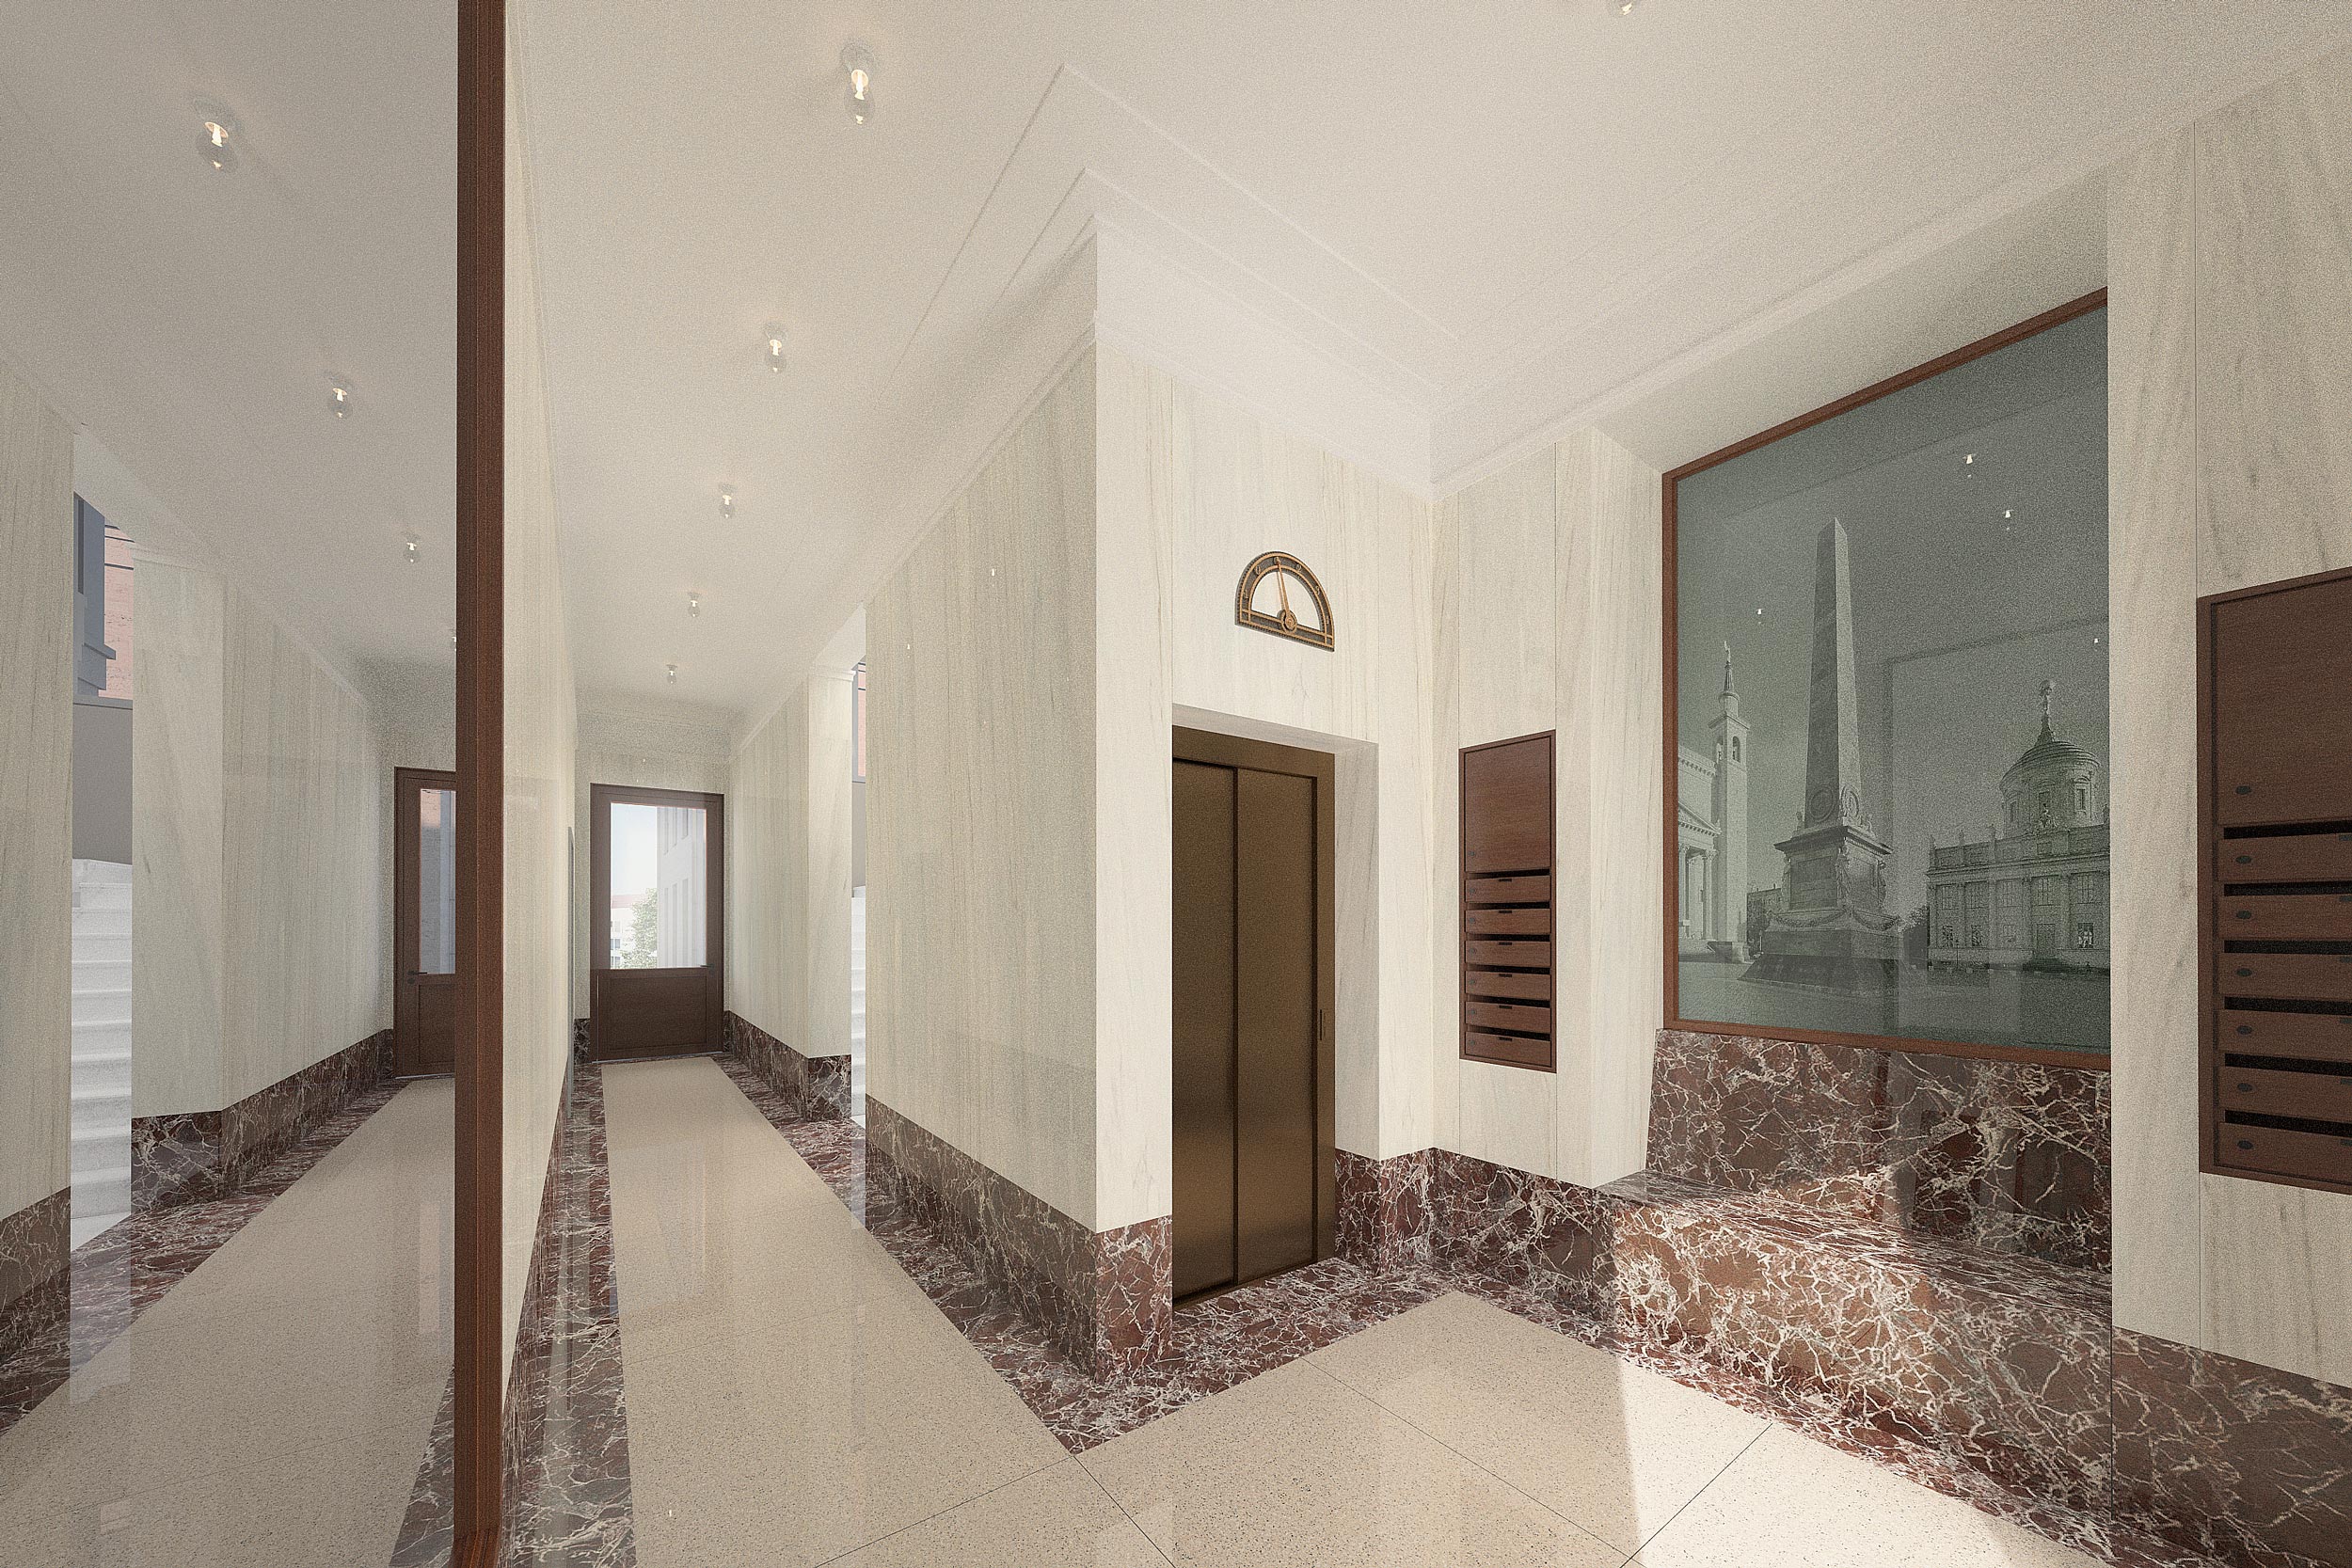 Das repräsentative Vestibül ist klassisch elegant gestaltet. Ein traditioneller Floor Indicator zeigt die exquisite Ausstattungsqualität.